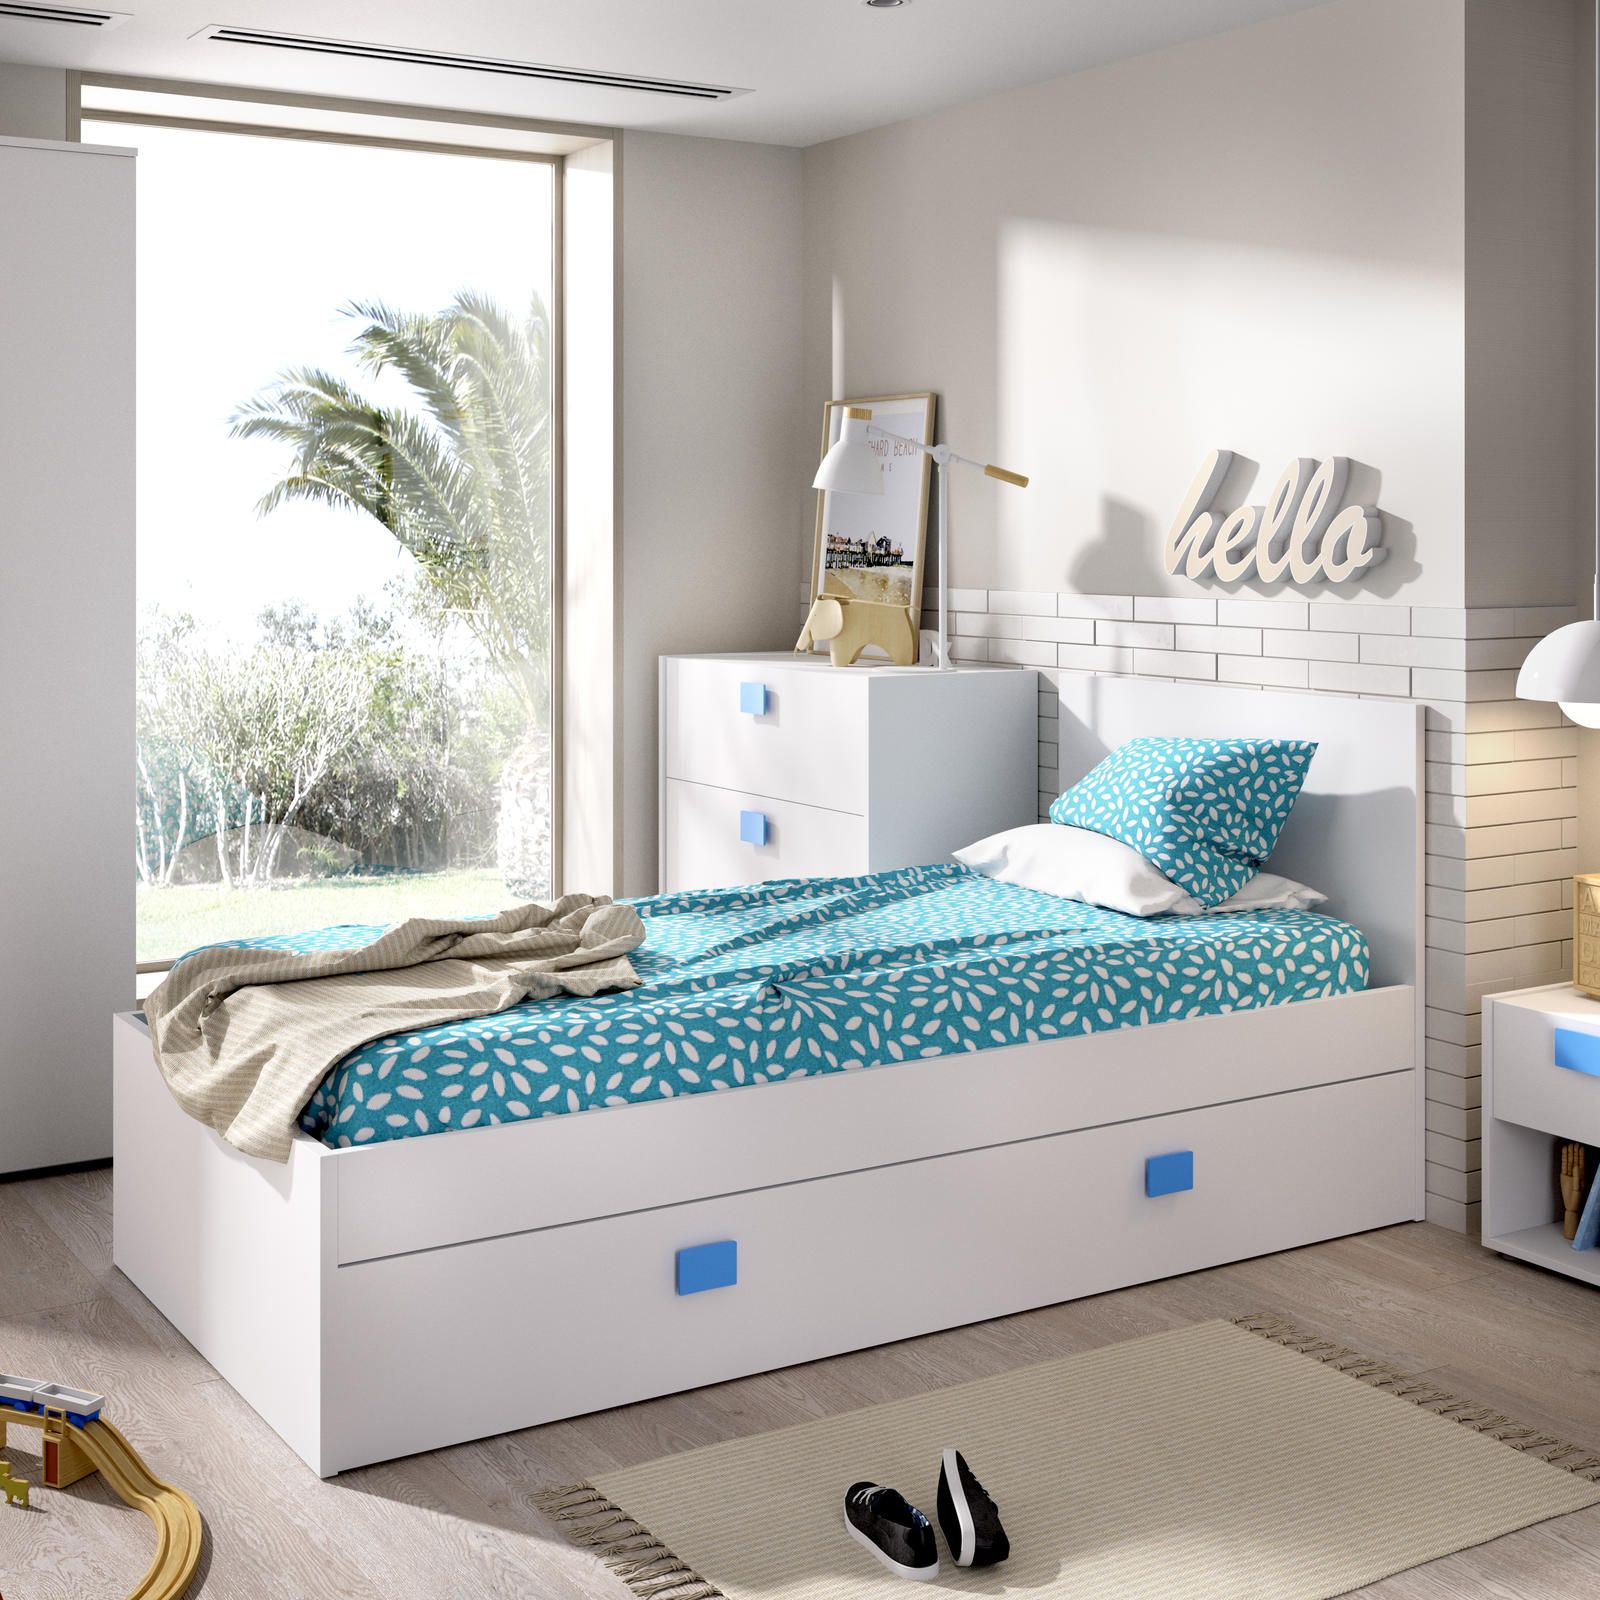 Aldo Dětská postel s přistýlkou Chic, white-blue - Nábytek ALDO